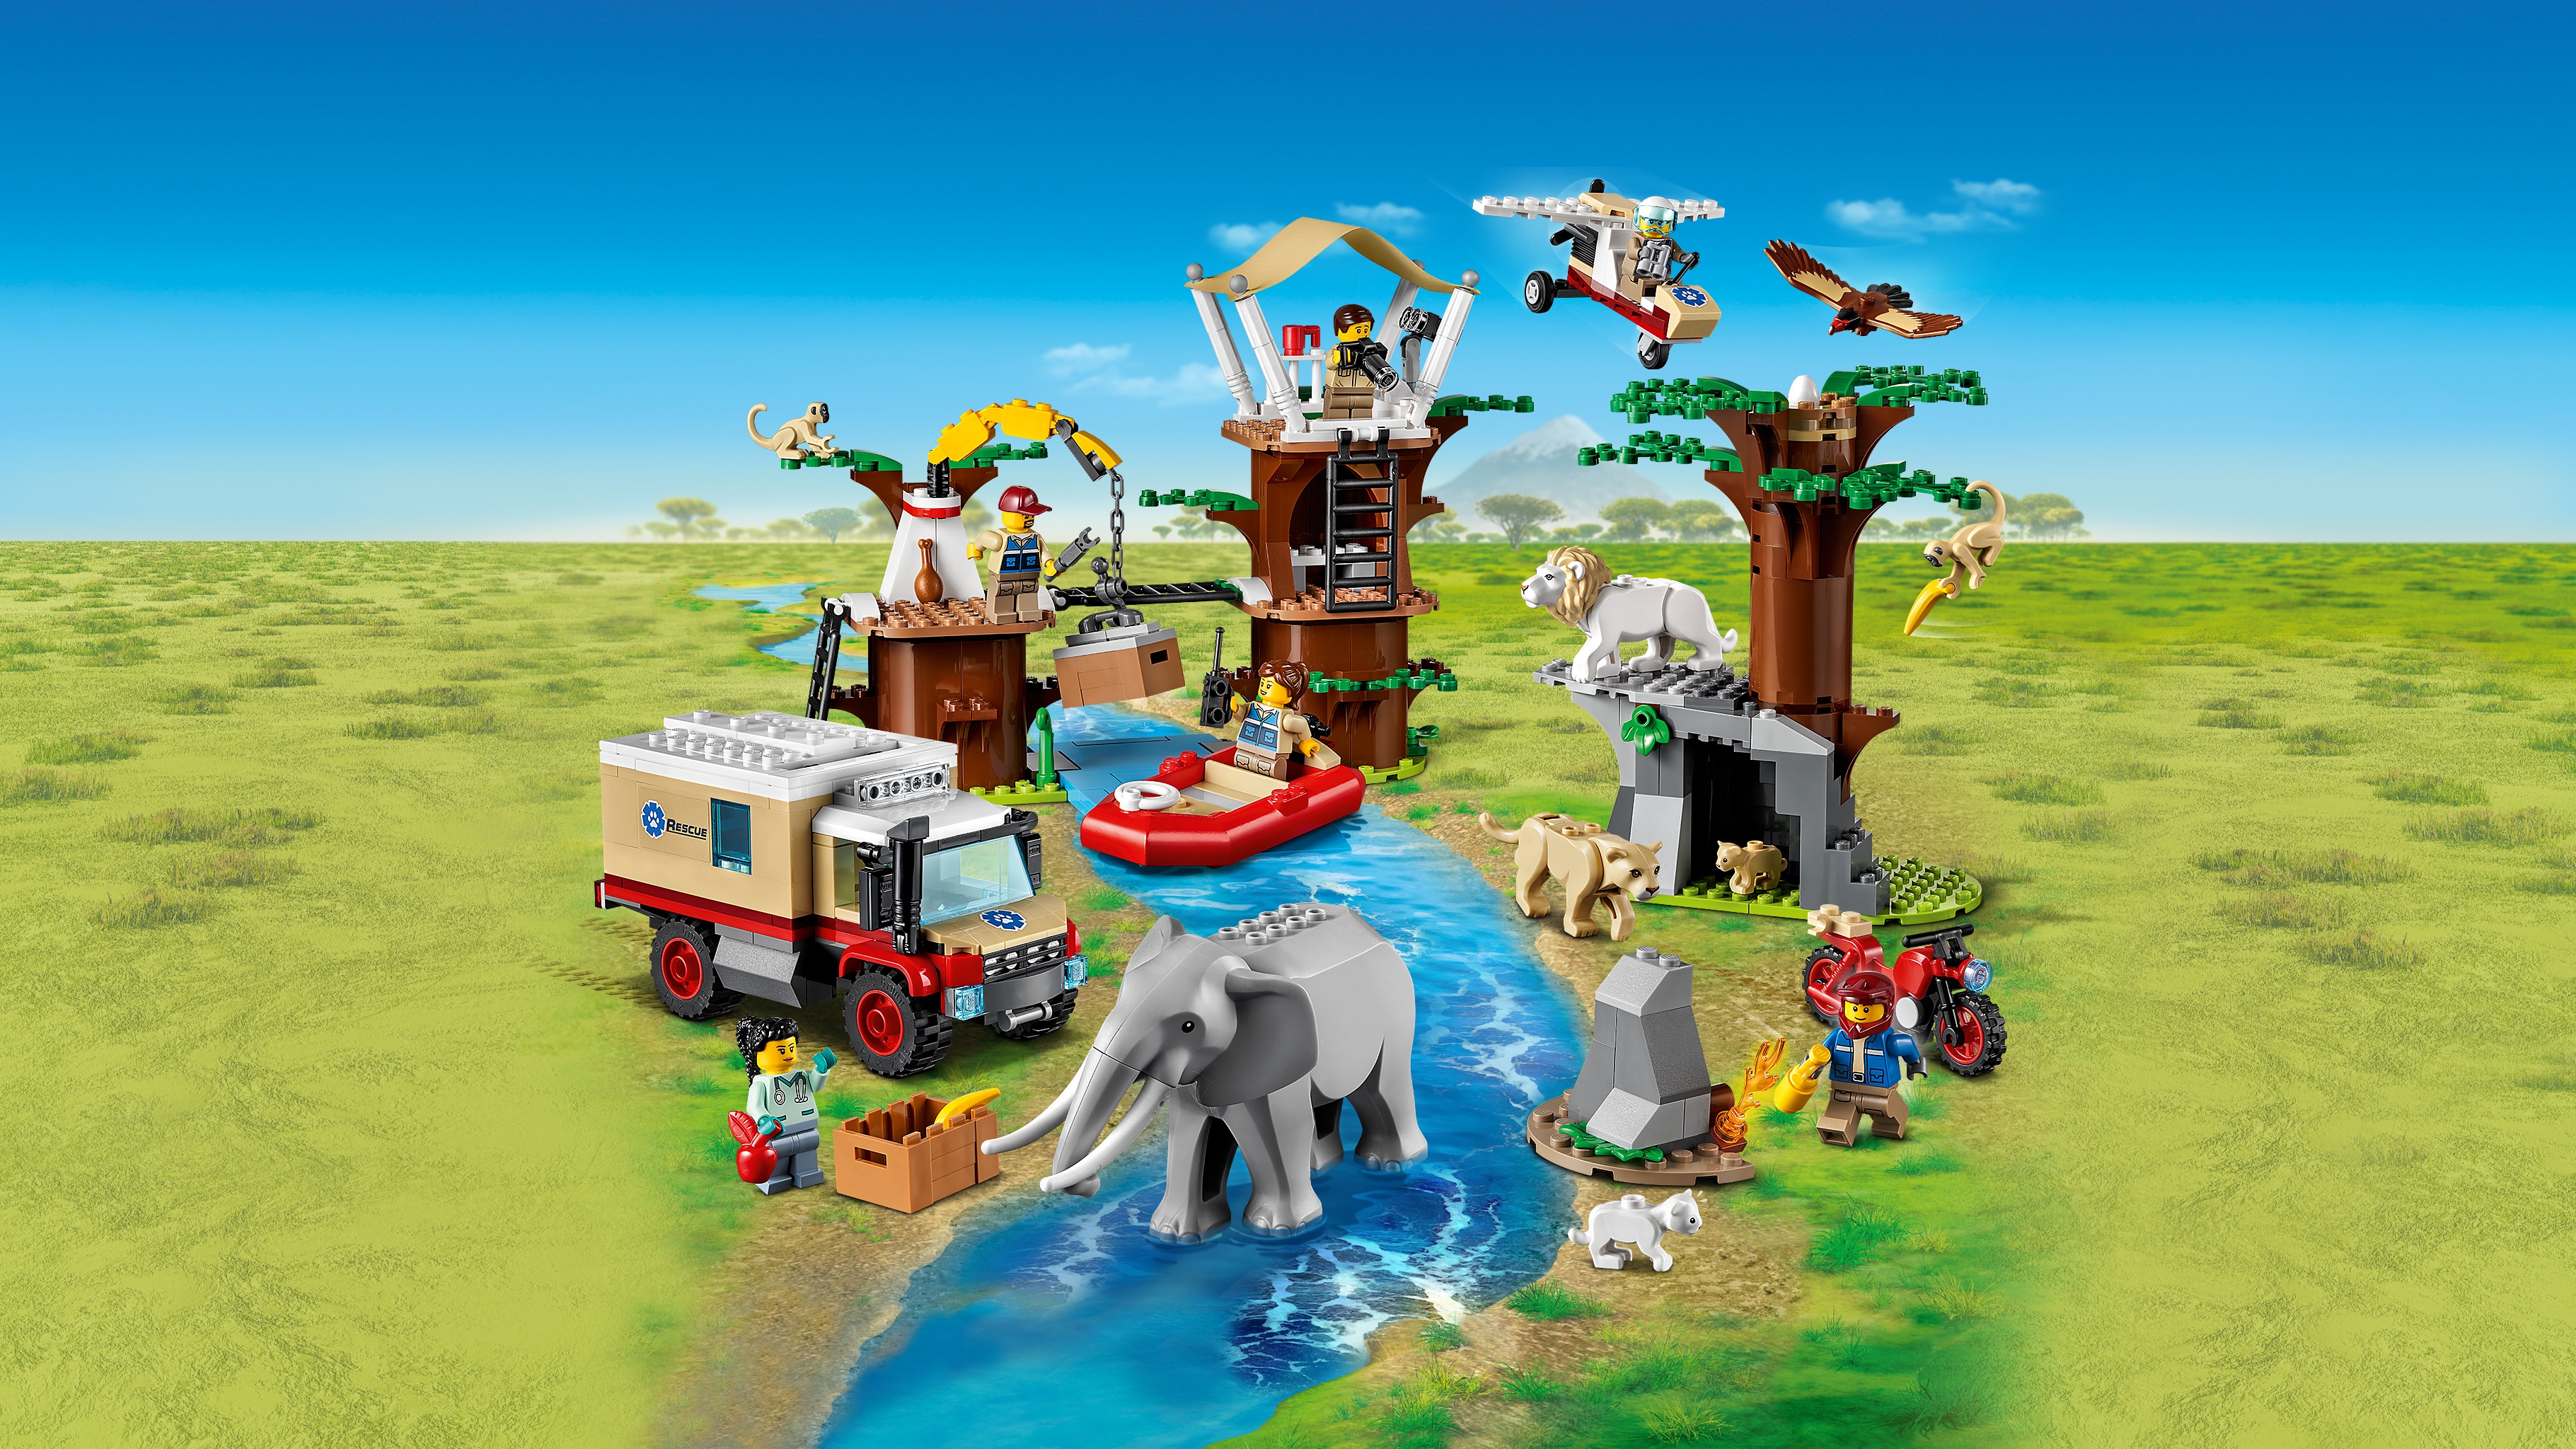 どうぶつレスキュー基地 60307 - レゴ®シティ セット - LEGO.comキッズ